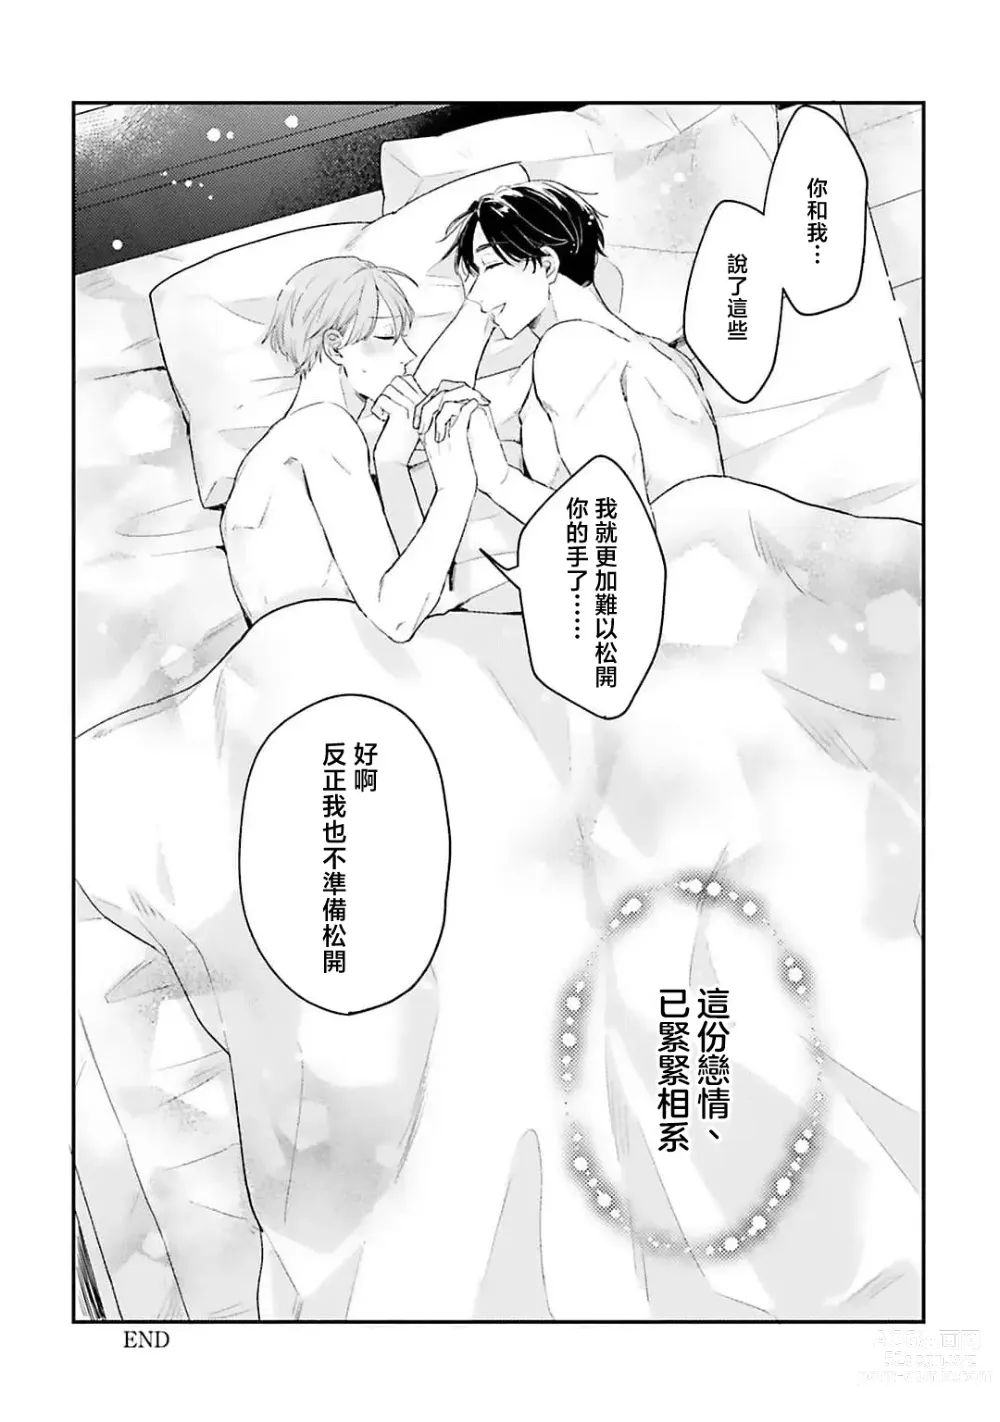 Page 166 of manga 绽放的恋爱皆为醉与甜1-5